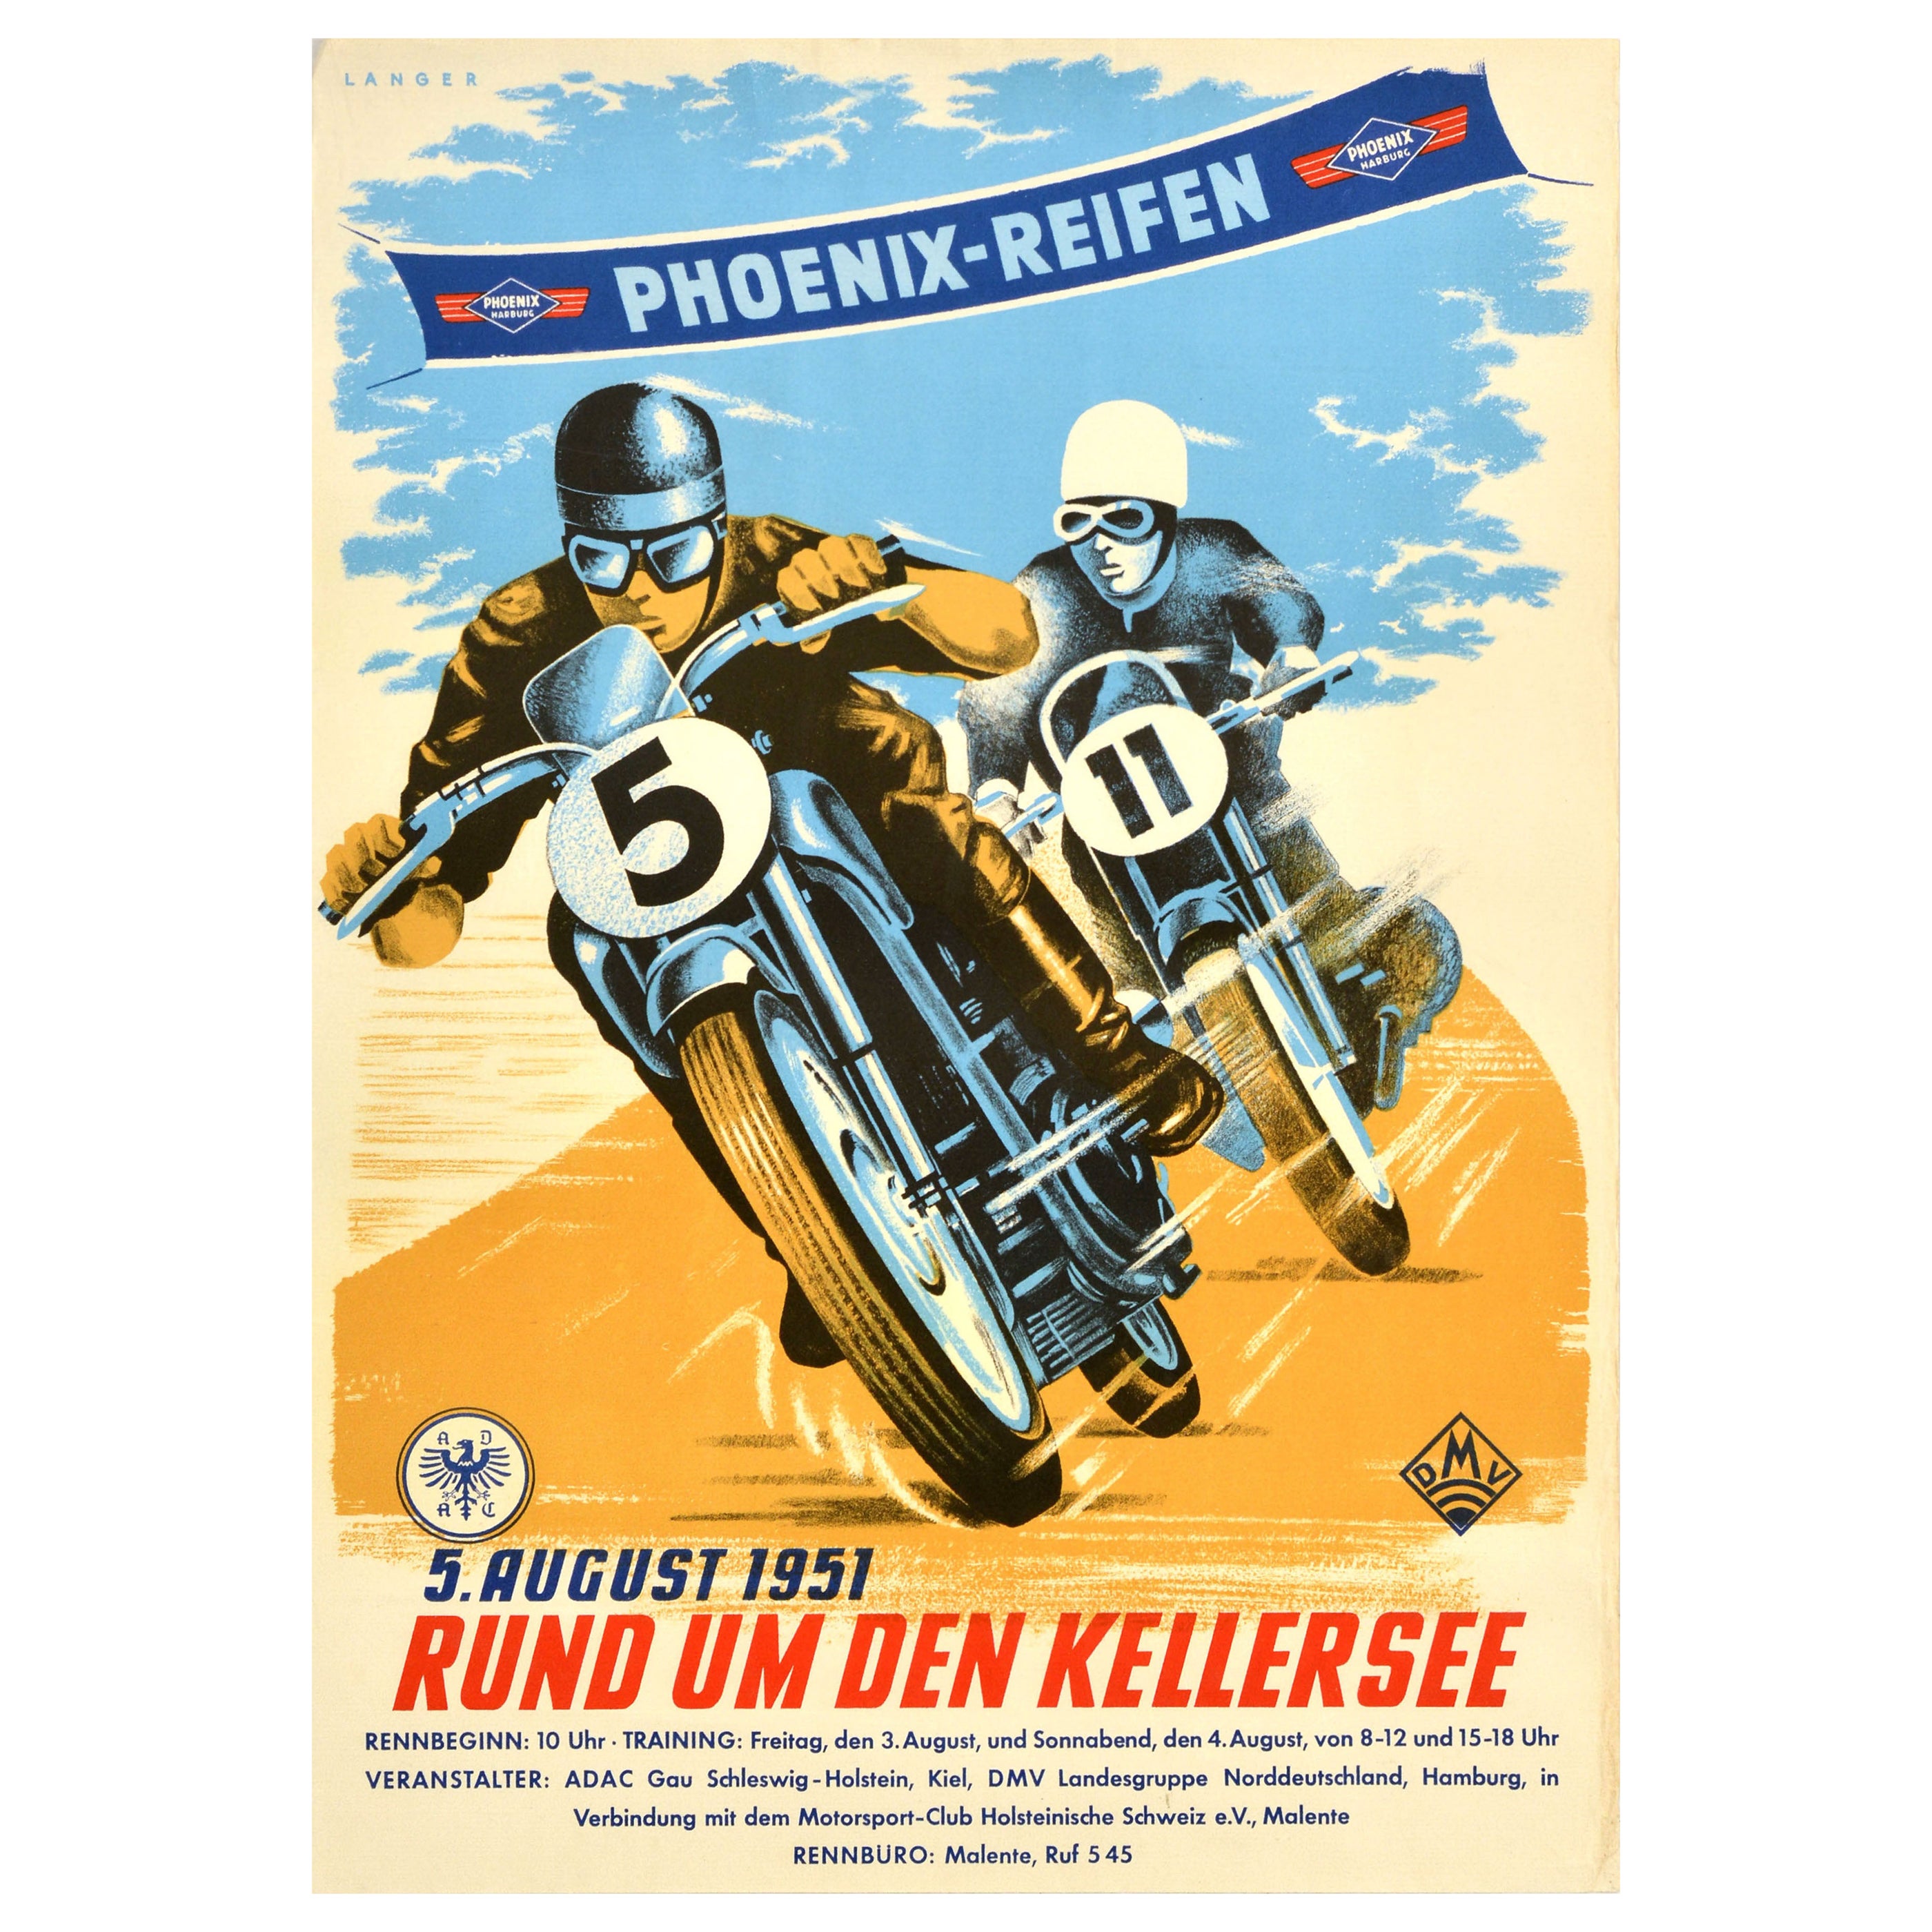 Affiche Motorsport originale de Phoenix Reifen 1951 Kellersee